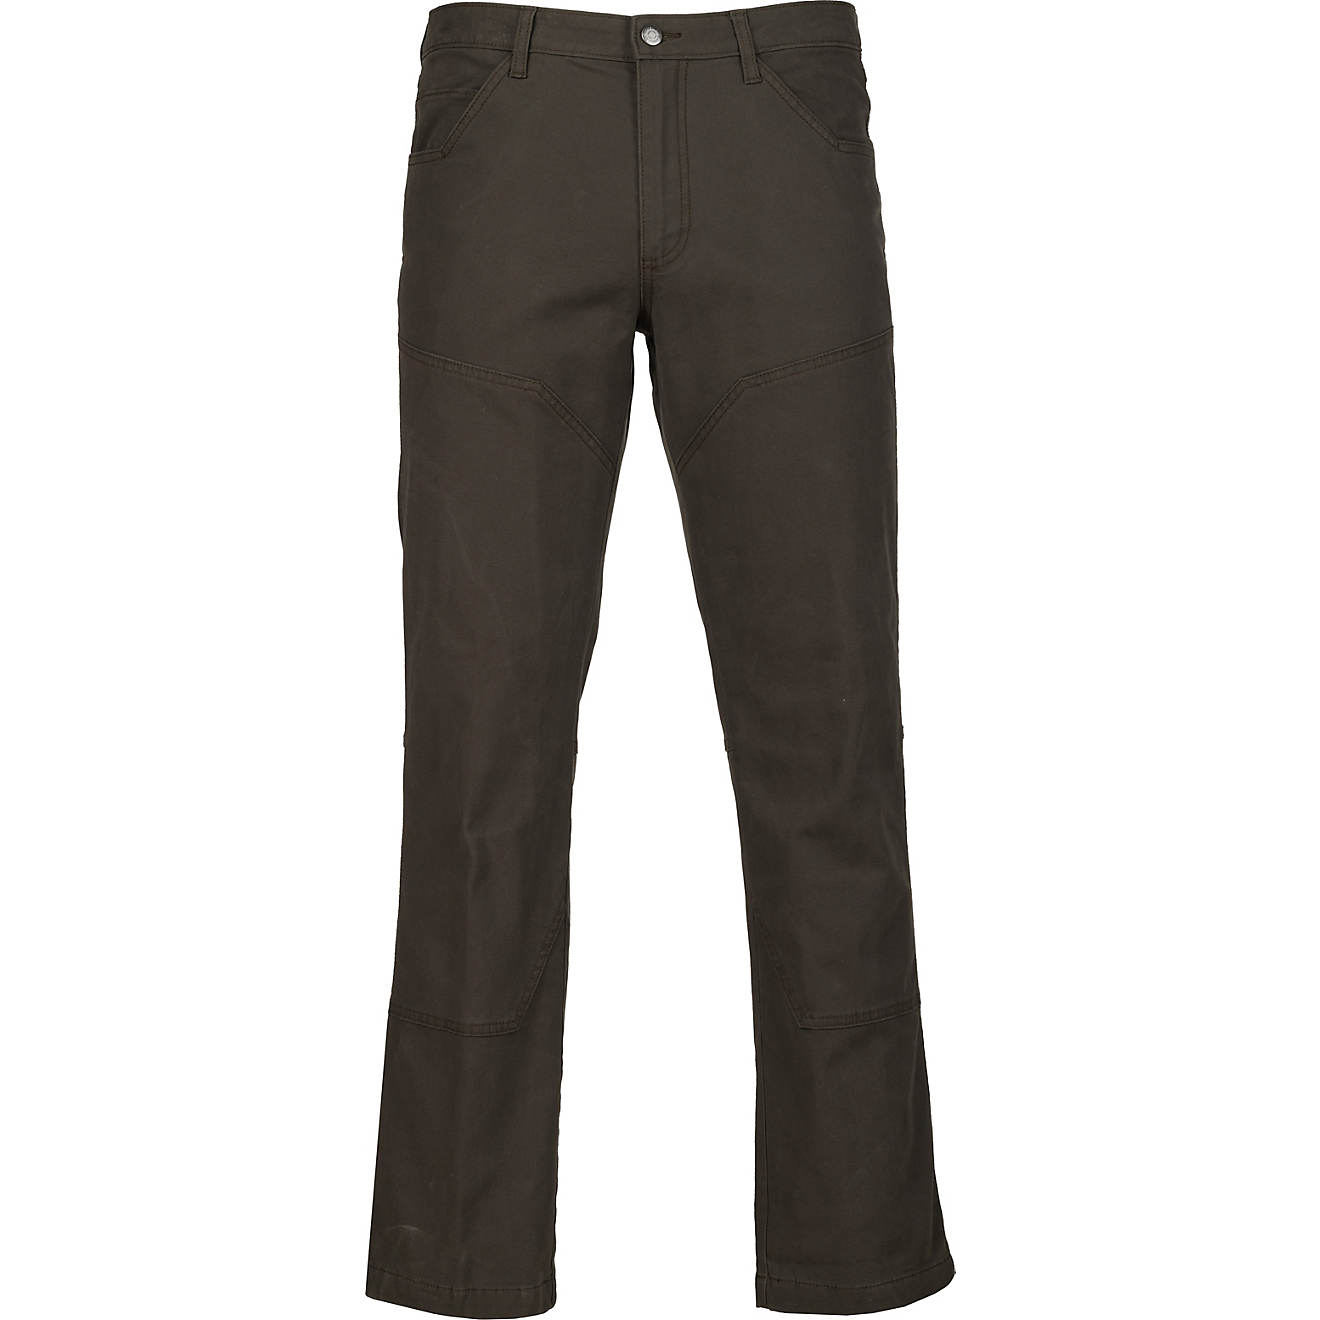 Magellan Outdoors Men's Peco Ridge Flannel Lined Pants | Academy